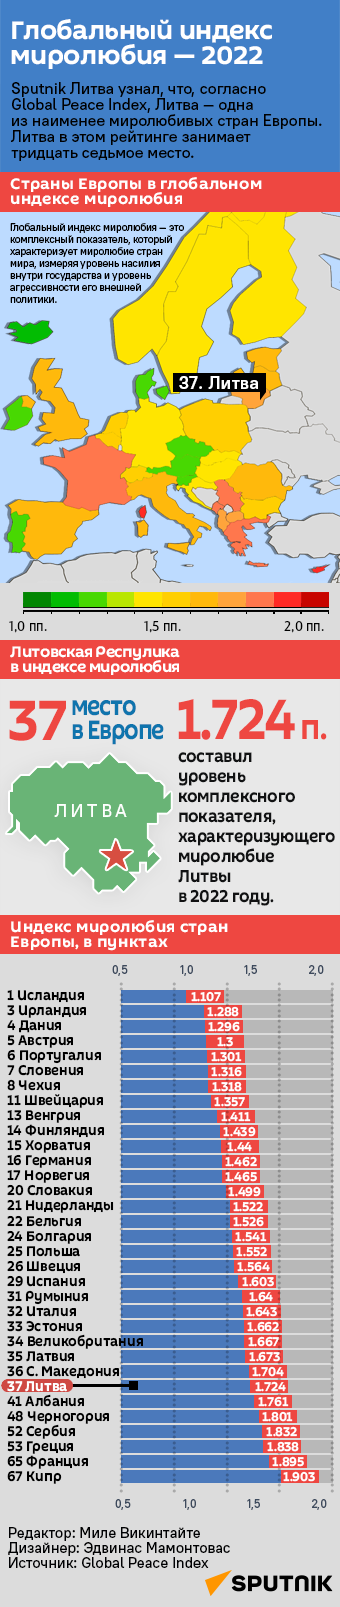 Глобальный индекс миролюбия в ЕС и Западной Европе — 2022 - Sputnik Литва